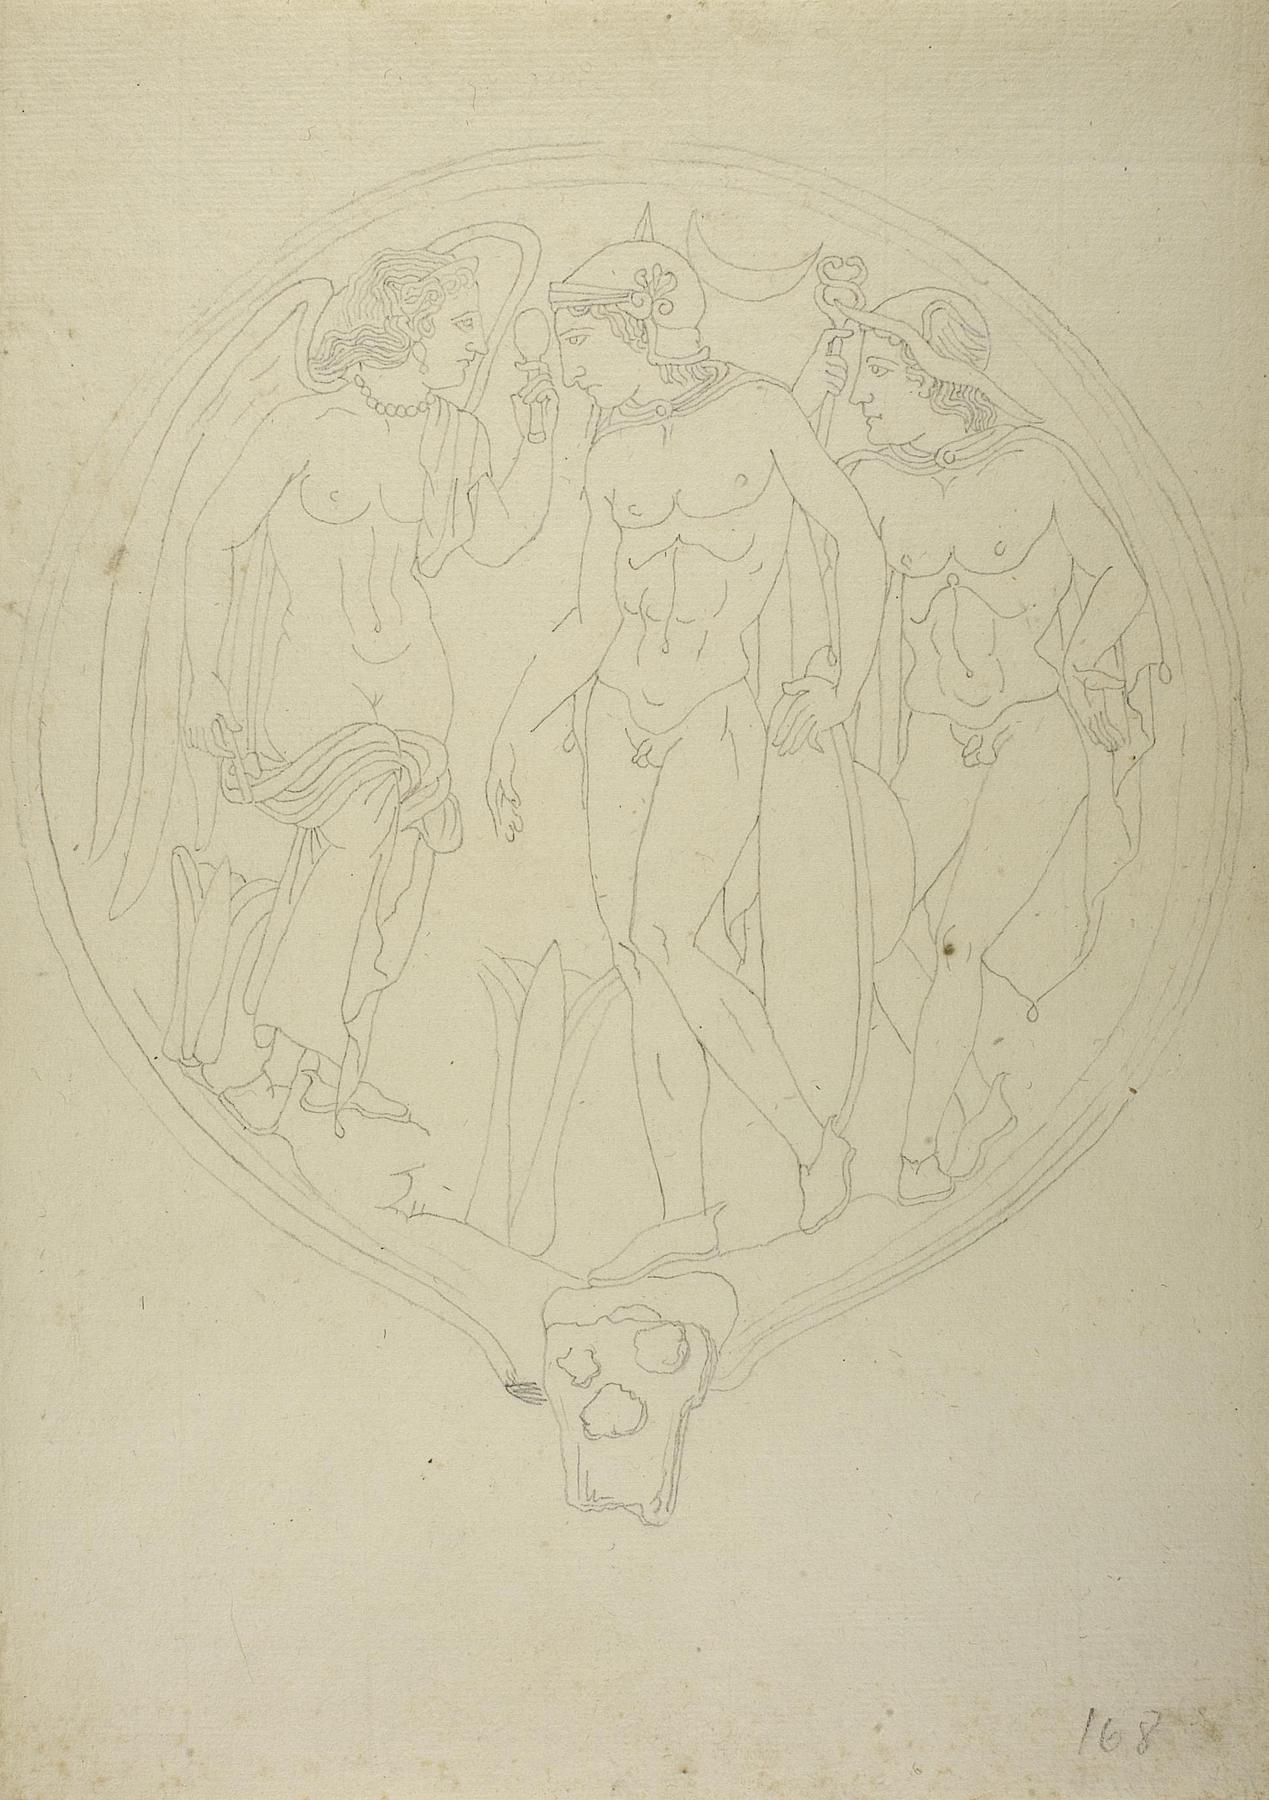 Kriger, vinget gudinde og Hermes/Turms, D1134